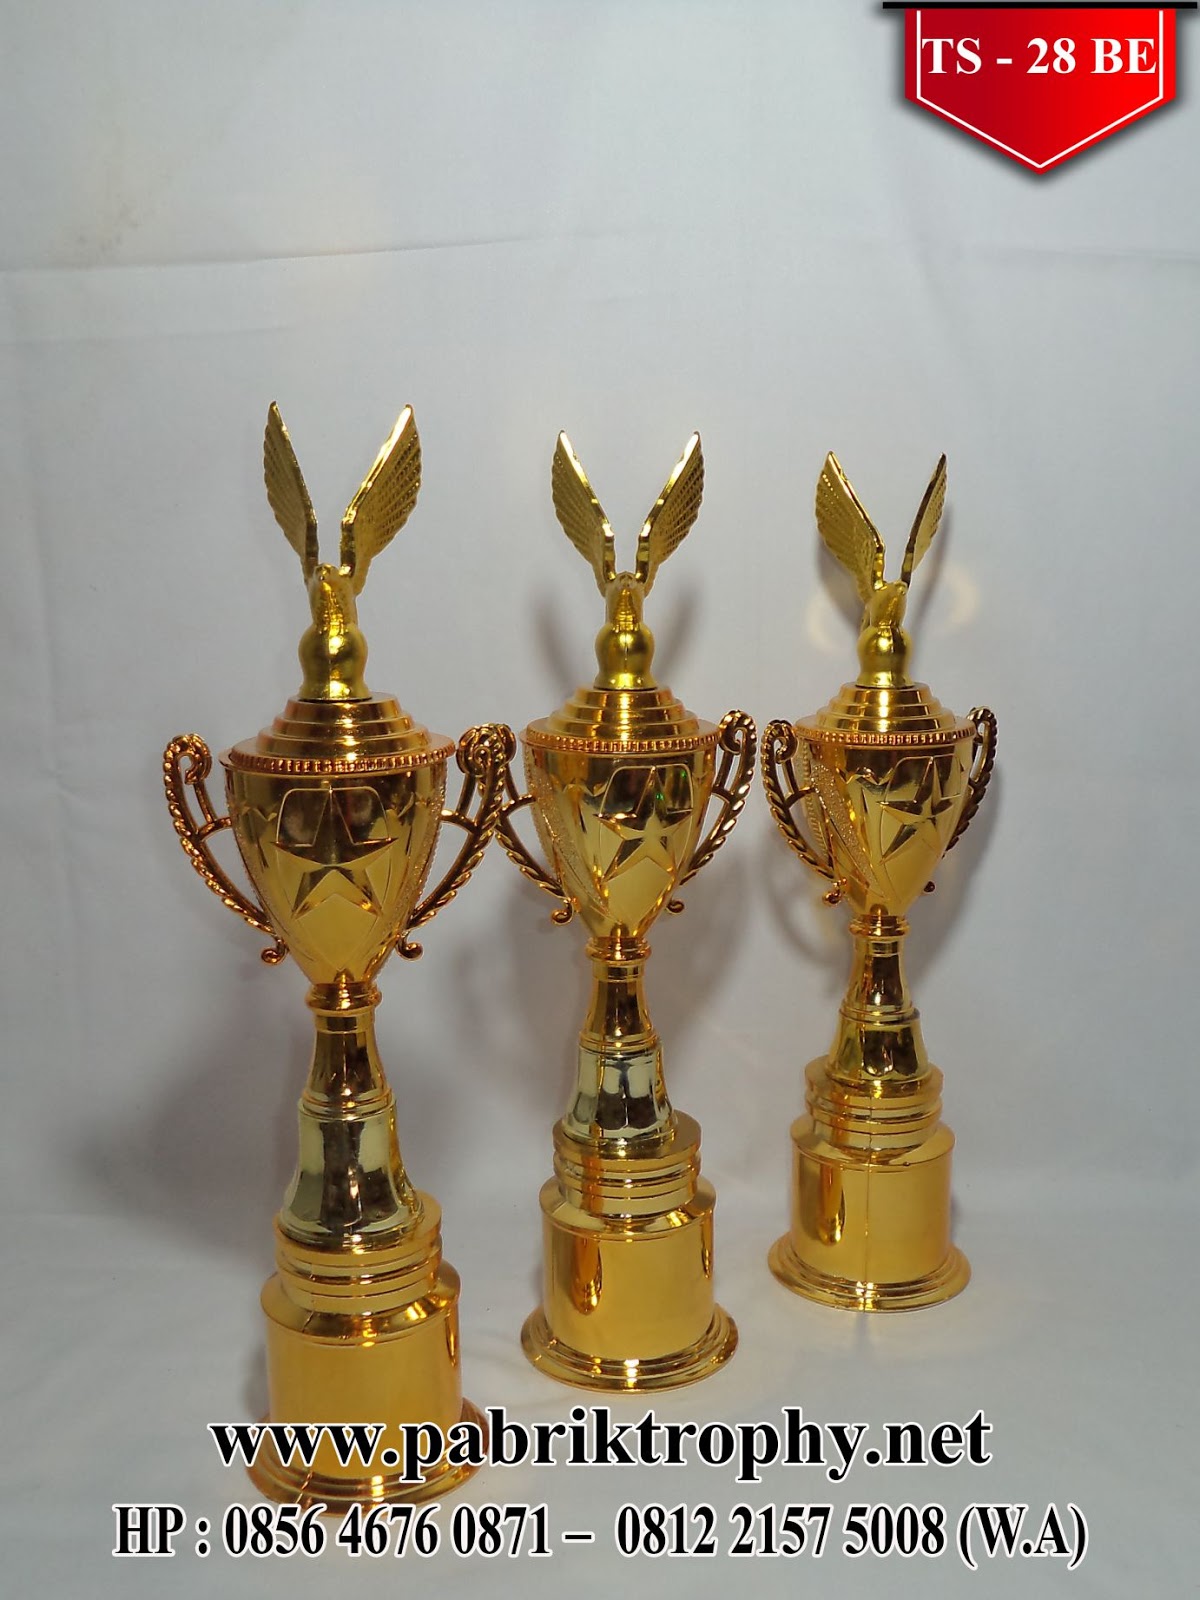  Toko  Piala di Jakarta  Barat  Sentral Piala Murah Tulungagung